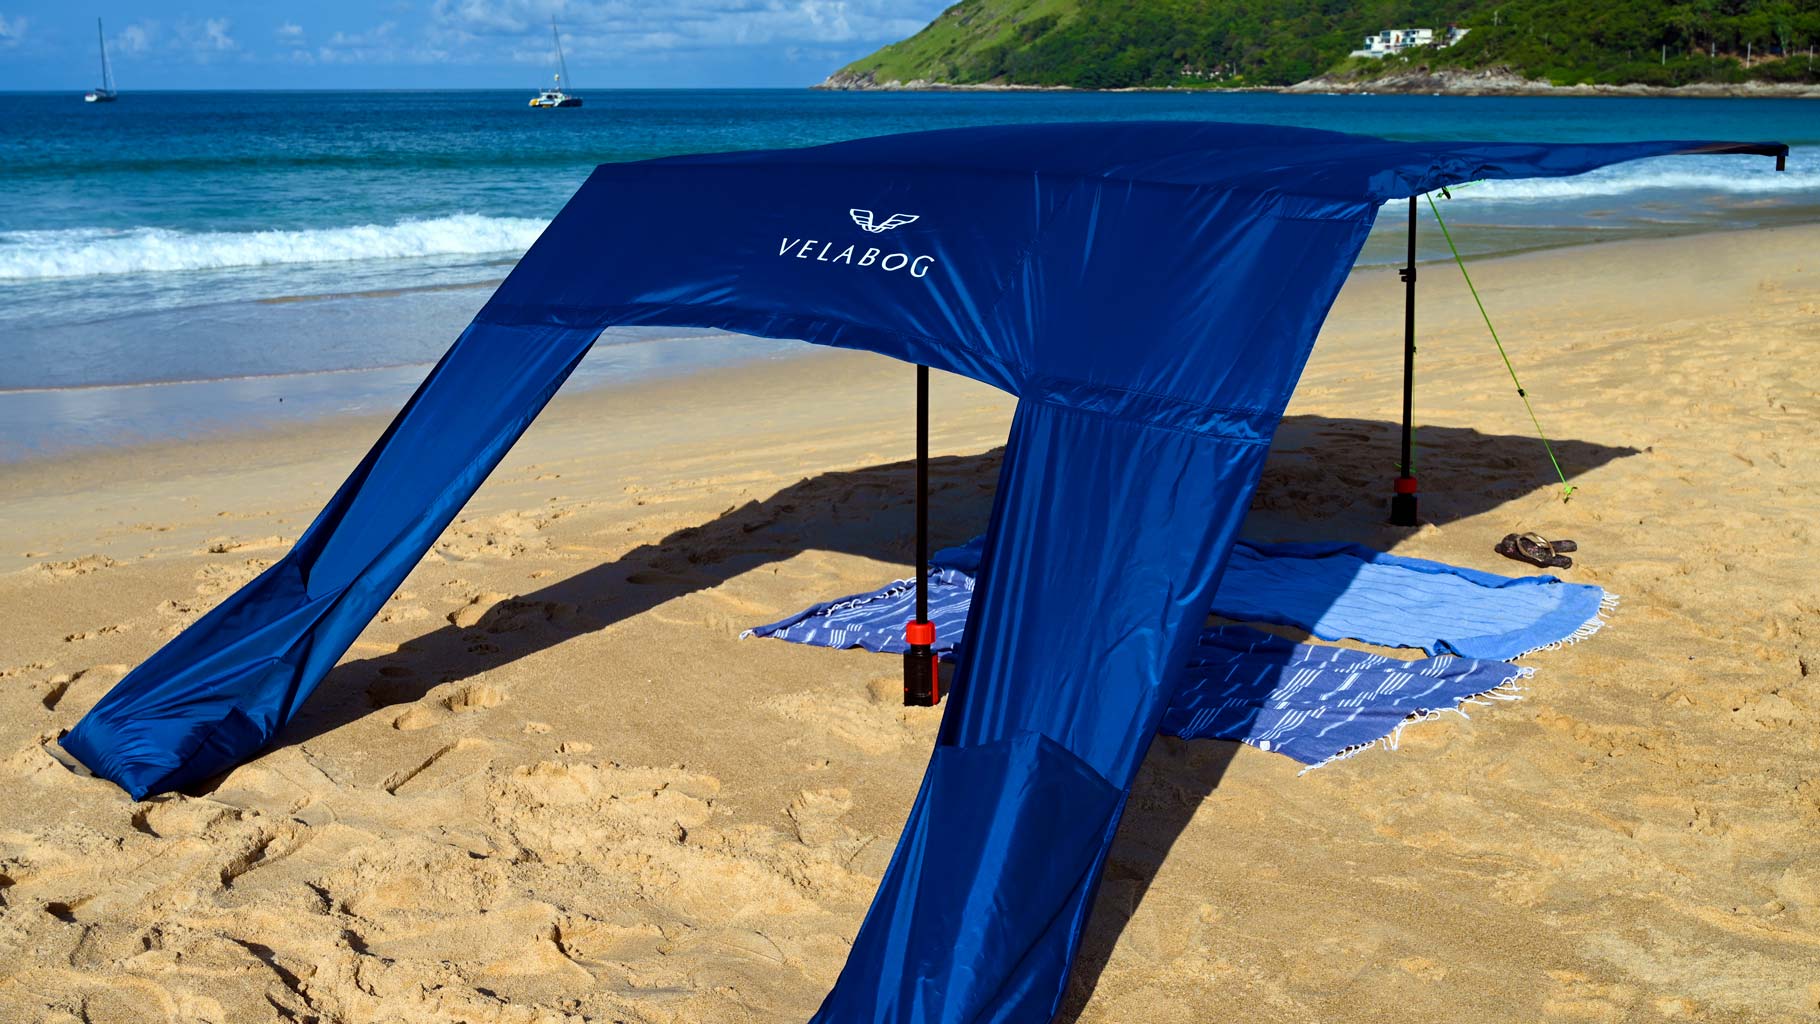 Voile d’ombrage tente plage Velabog Breeze bleu nuit avec kit d’extension sur une plage balayée par des rafales de vent. Voile d’ombrage, parasol et tente de plage en un seul produit. Offre beaucoup d’ombre par tout type de vent, qu’il soit faible, fort ou en rafales. Vue de dos.